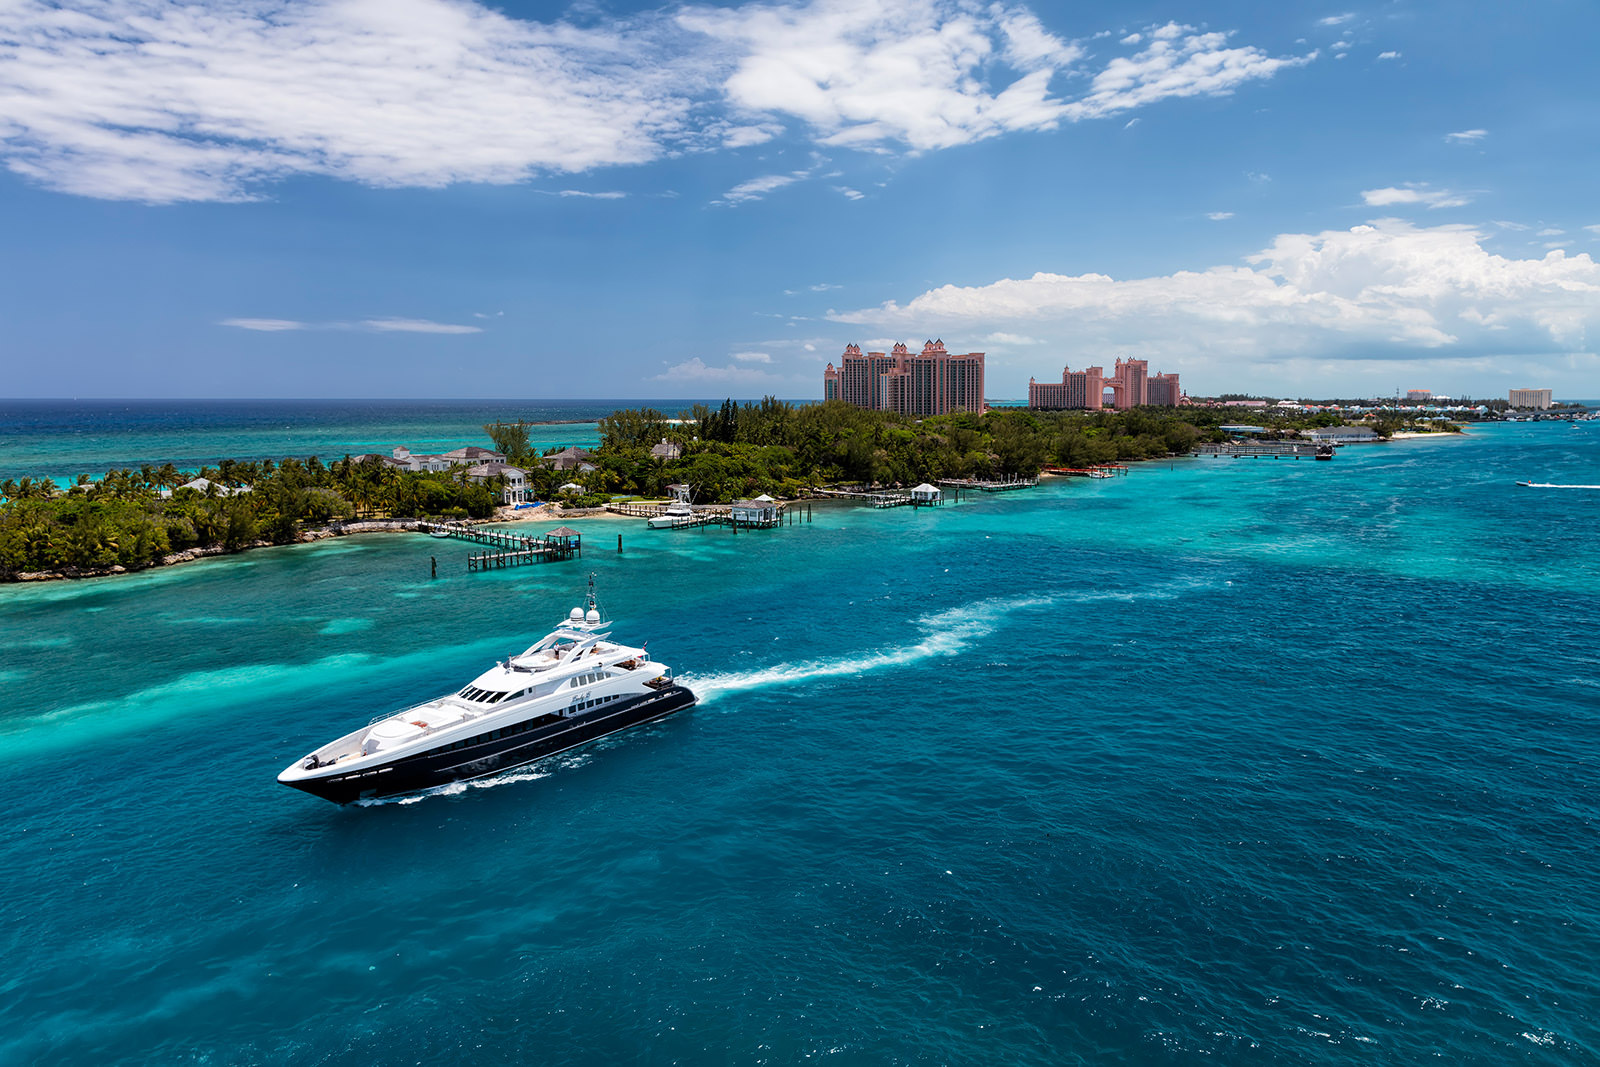 Lady L Luxury Yacht in Nassau photo by Alex Galiano